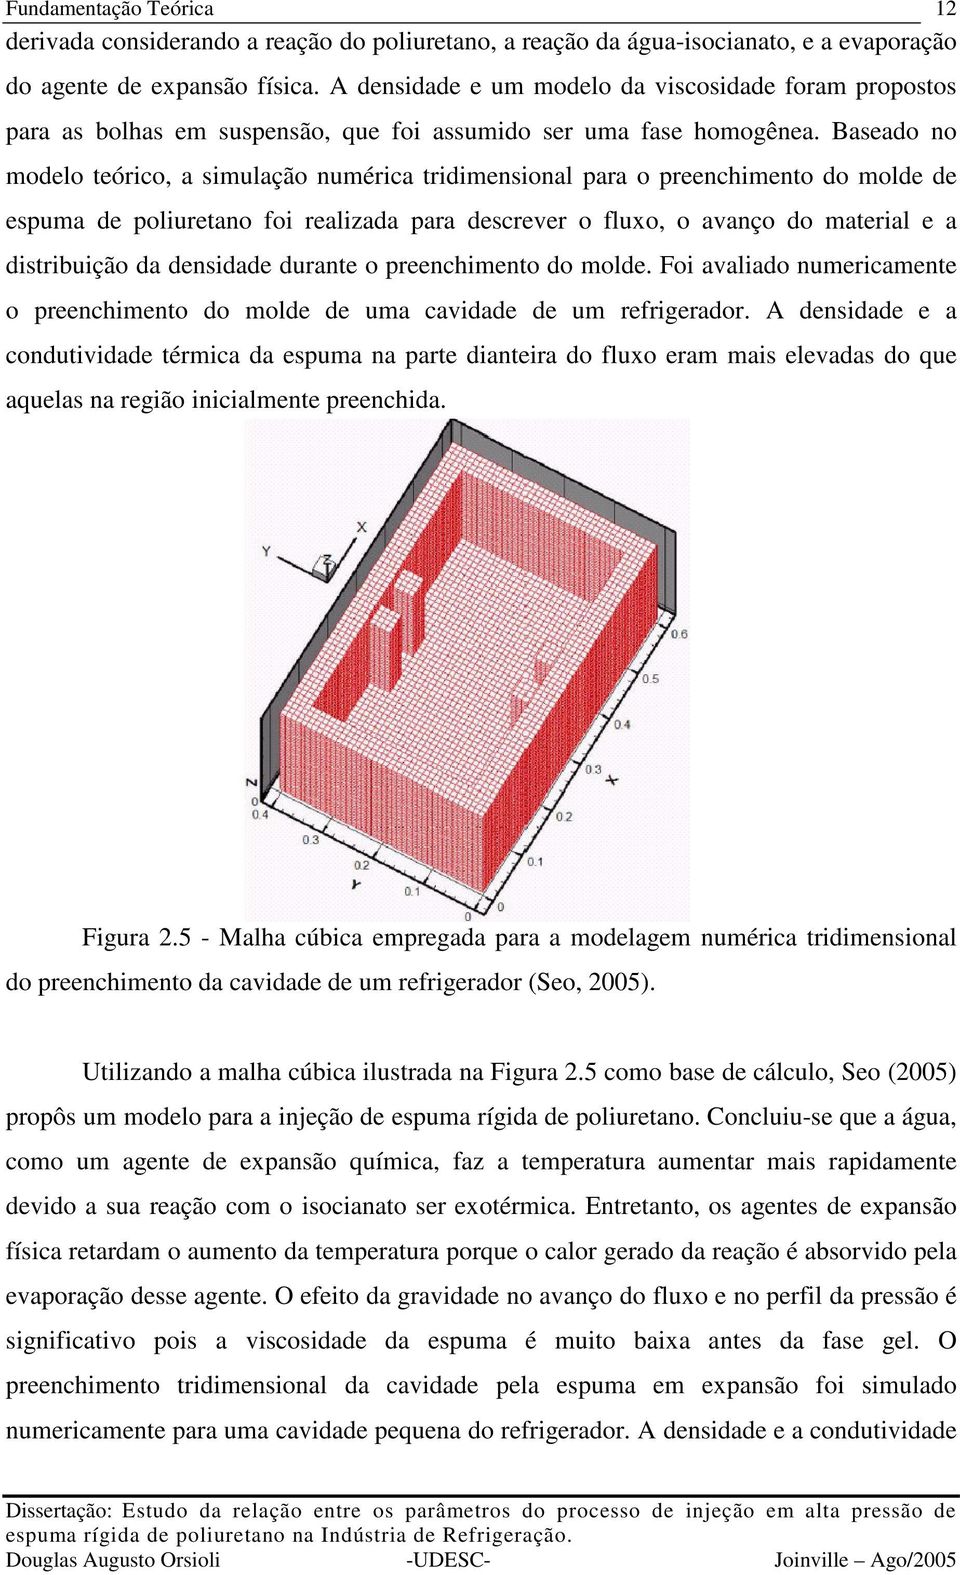 Baseado no modelo teórico, a simulação numérica tridimensional para o preenchimento do molde de espuma de poliuretano foi realizada para descrever o fluxo, o avanço do material e a distribuição da